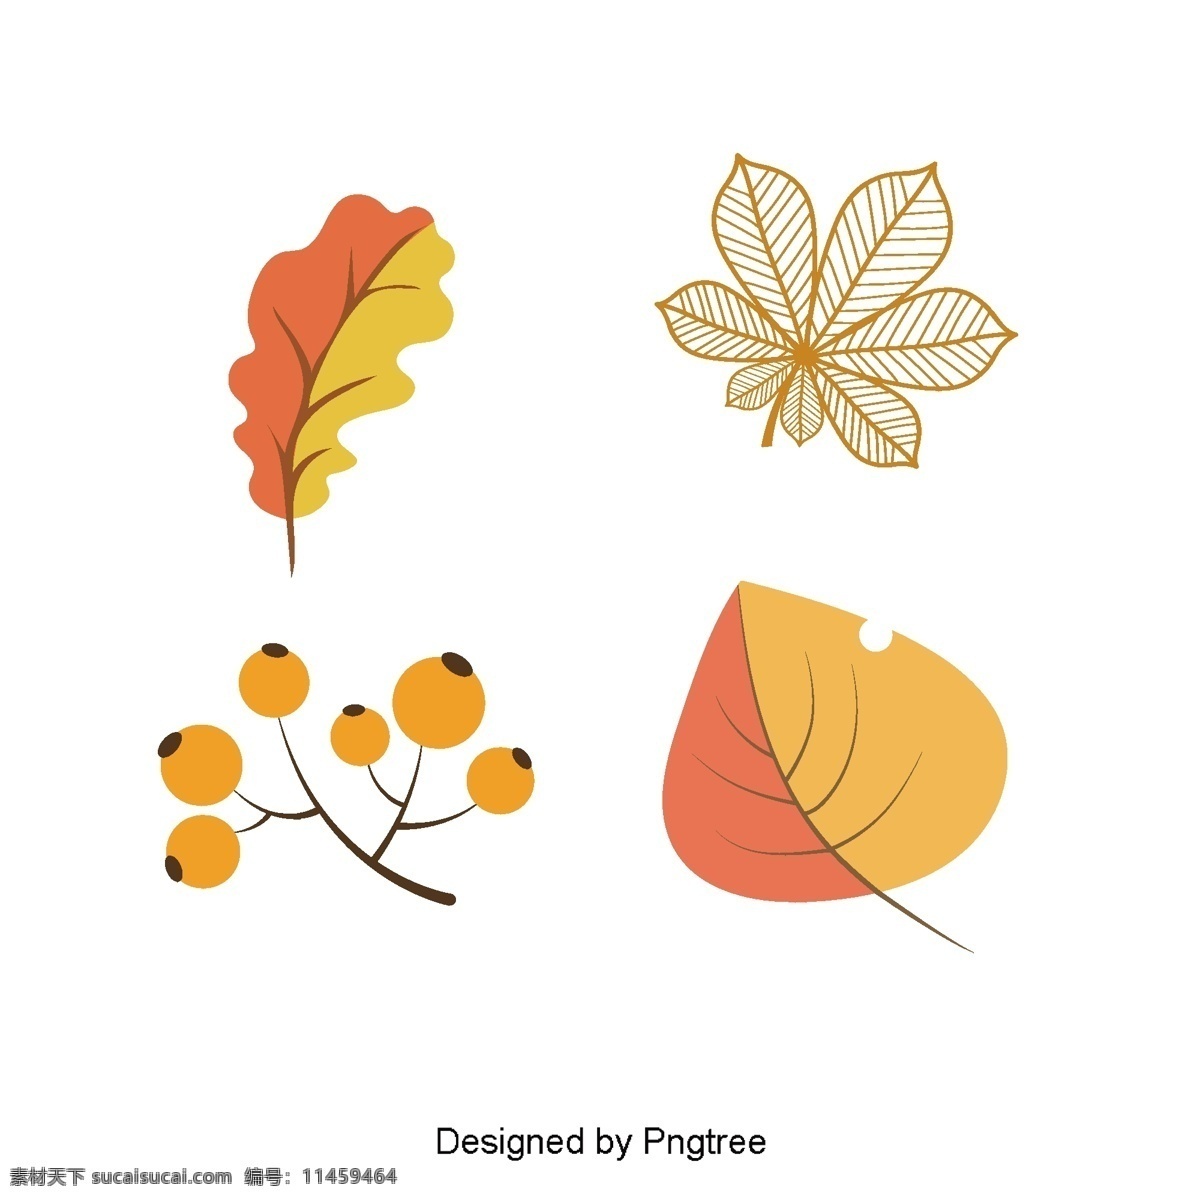 简单 的卡 通 秋天 材料 季节 设计模式 自然 纹理 卡通 向量 颜色 下降 植物